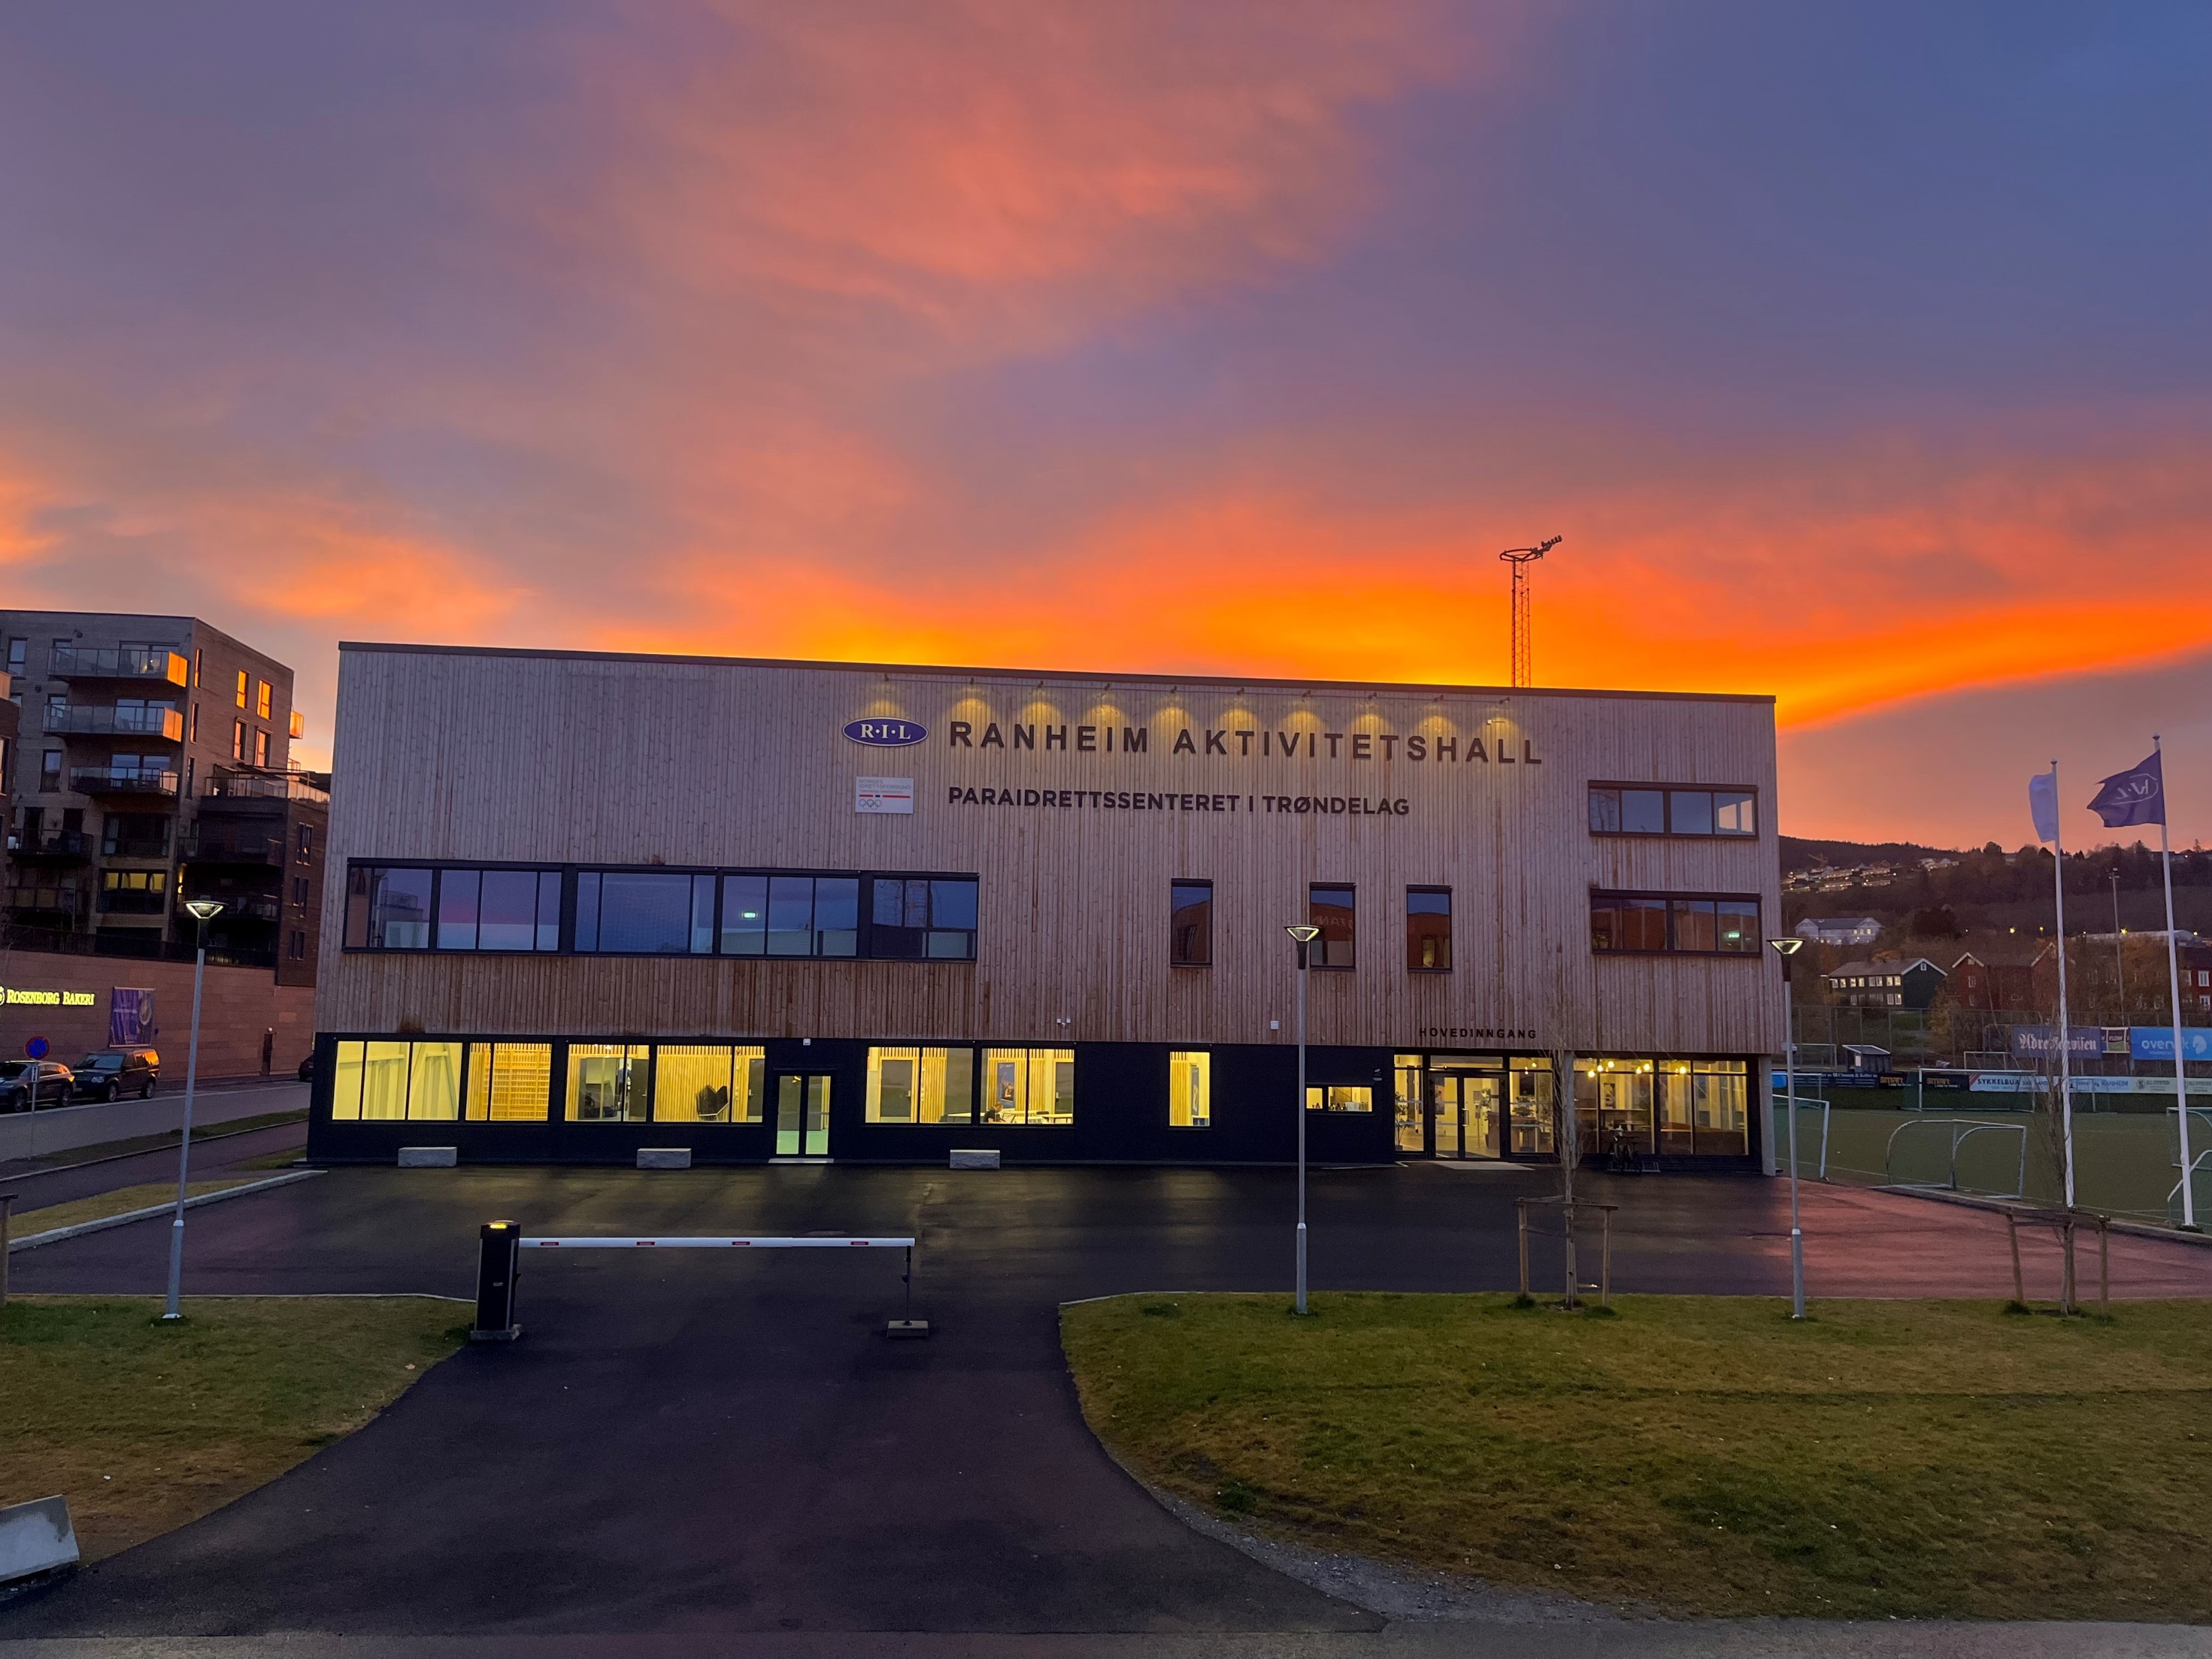 Fasadebilde av Ranheim Aktivitetshall og Paraidrettssenteret i Trøndelag i solnedgang